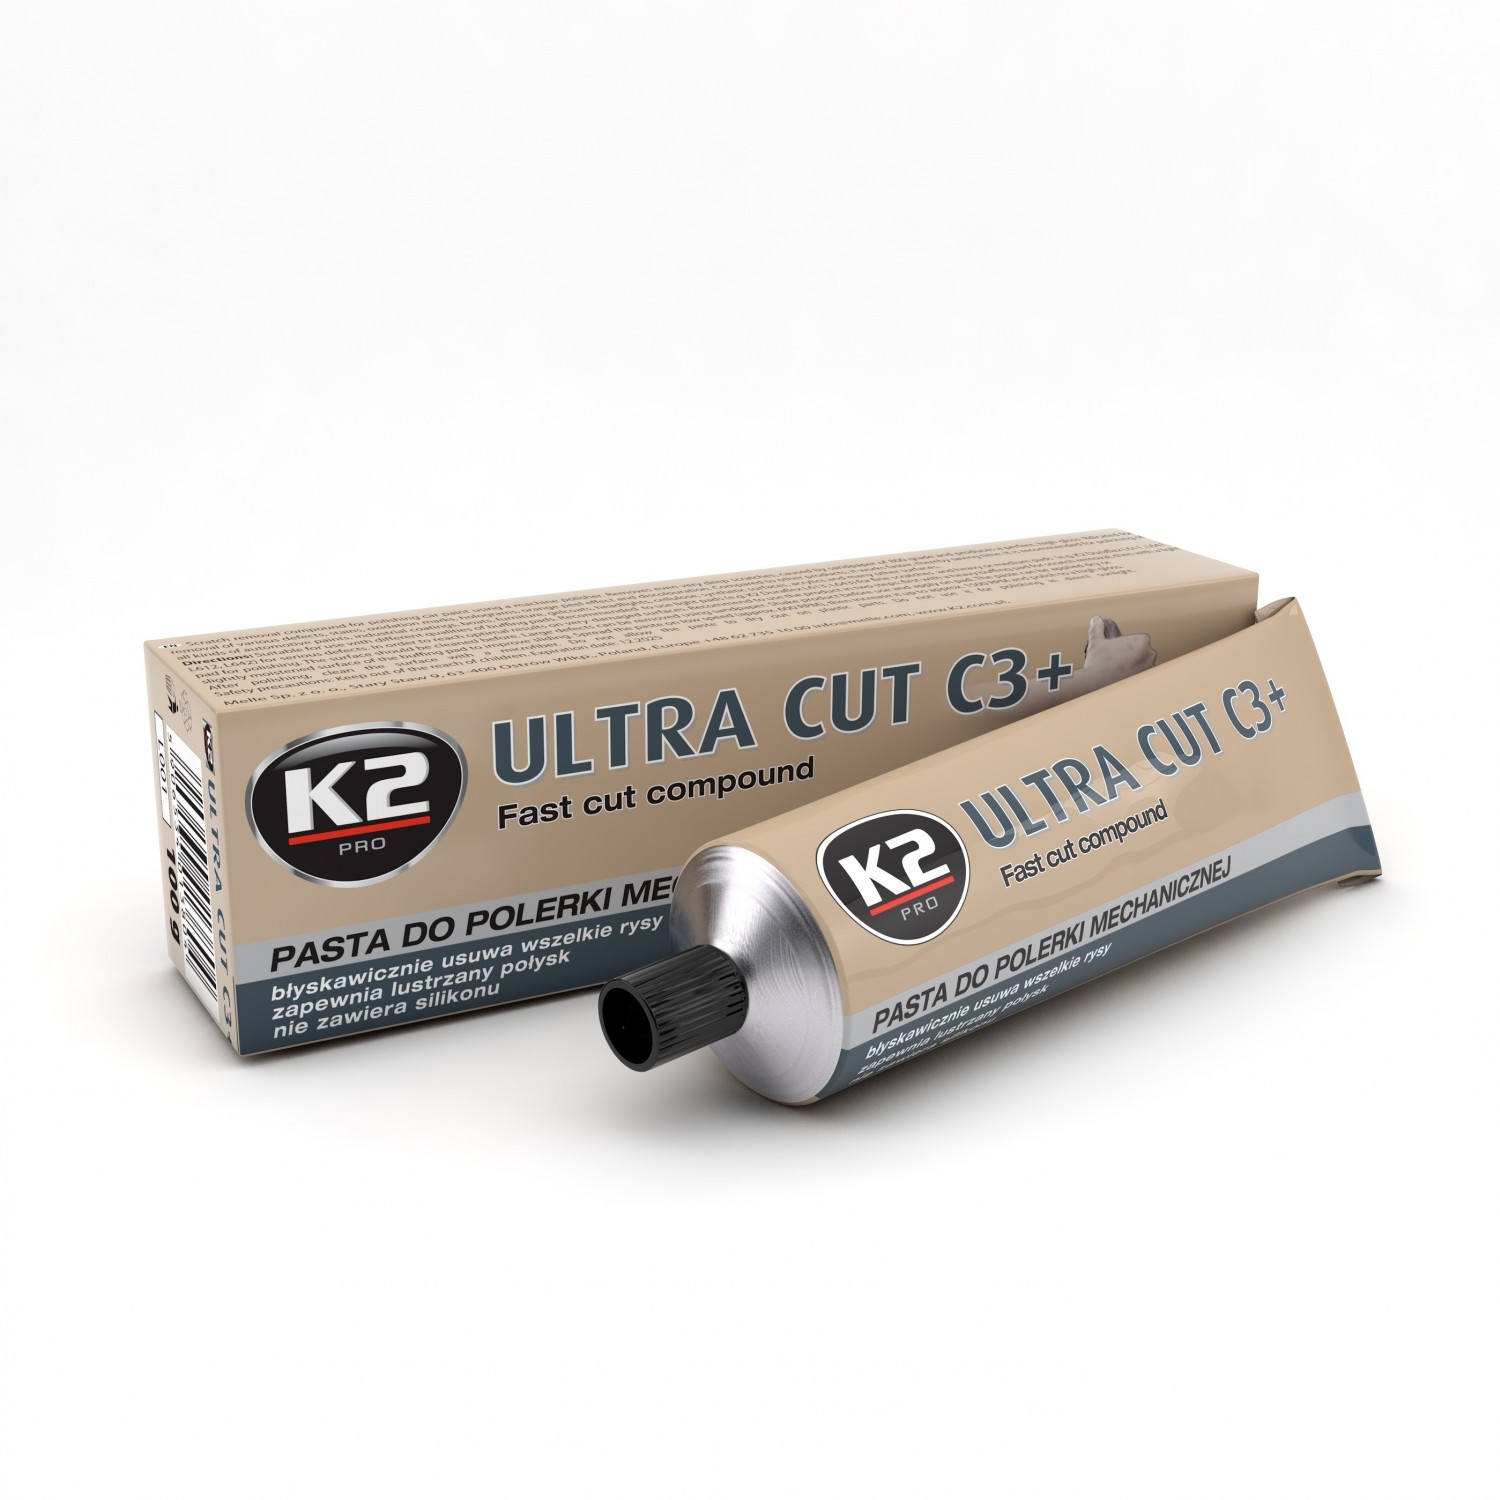 K2 ULTRA CUT C3+ 100 G